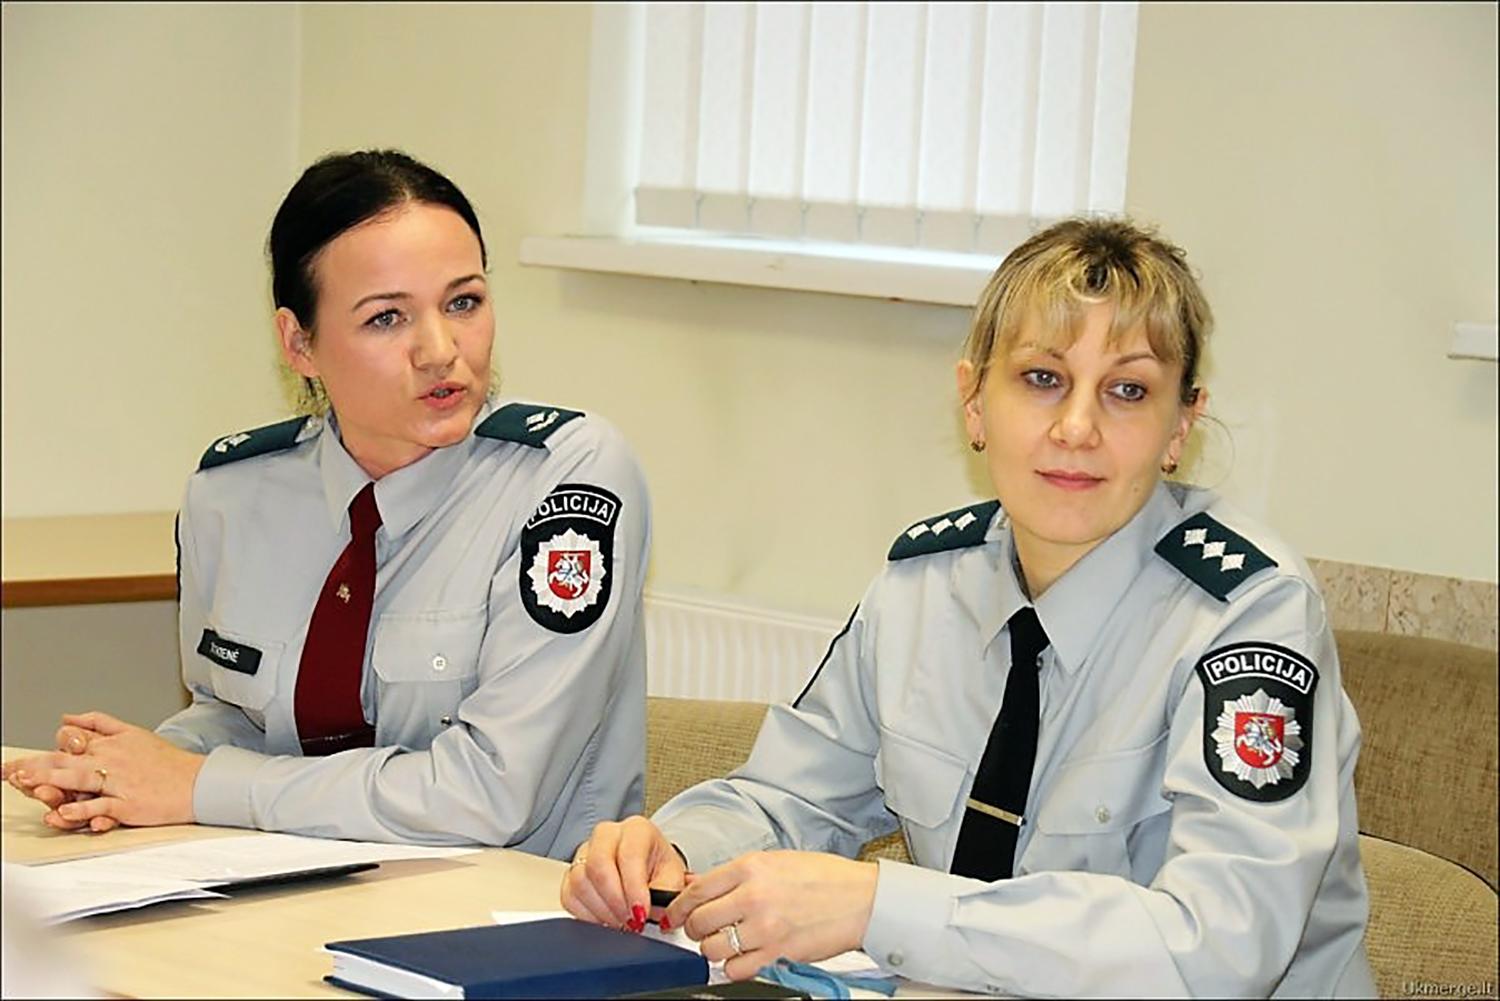 Kalbėta ir apie rajono policijos komisariato veiklą / Susitikime dalyvavo bendruomenės pareigūnės Ingrida Dutkienė ir Daiva Novikienė. Autorės nuotr.